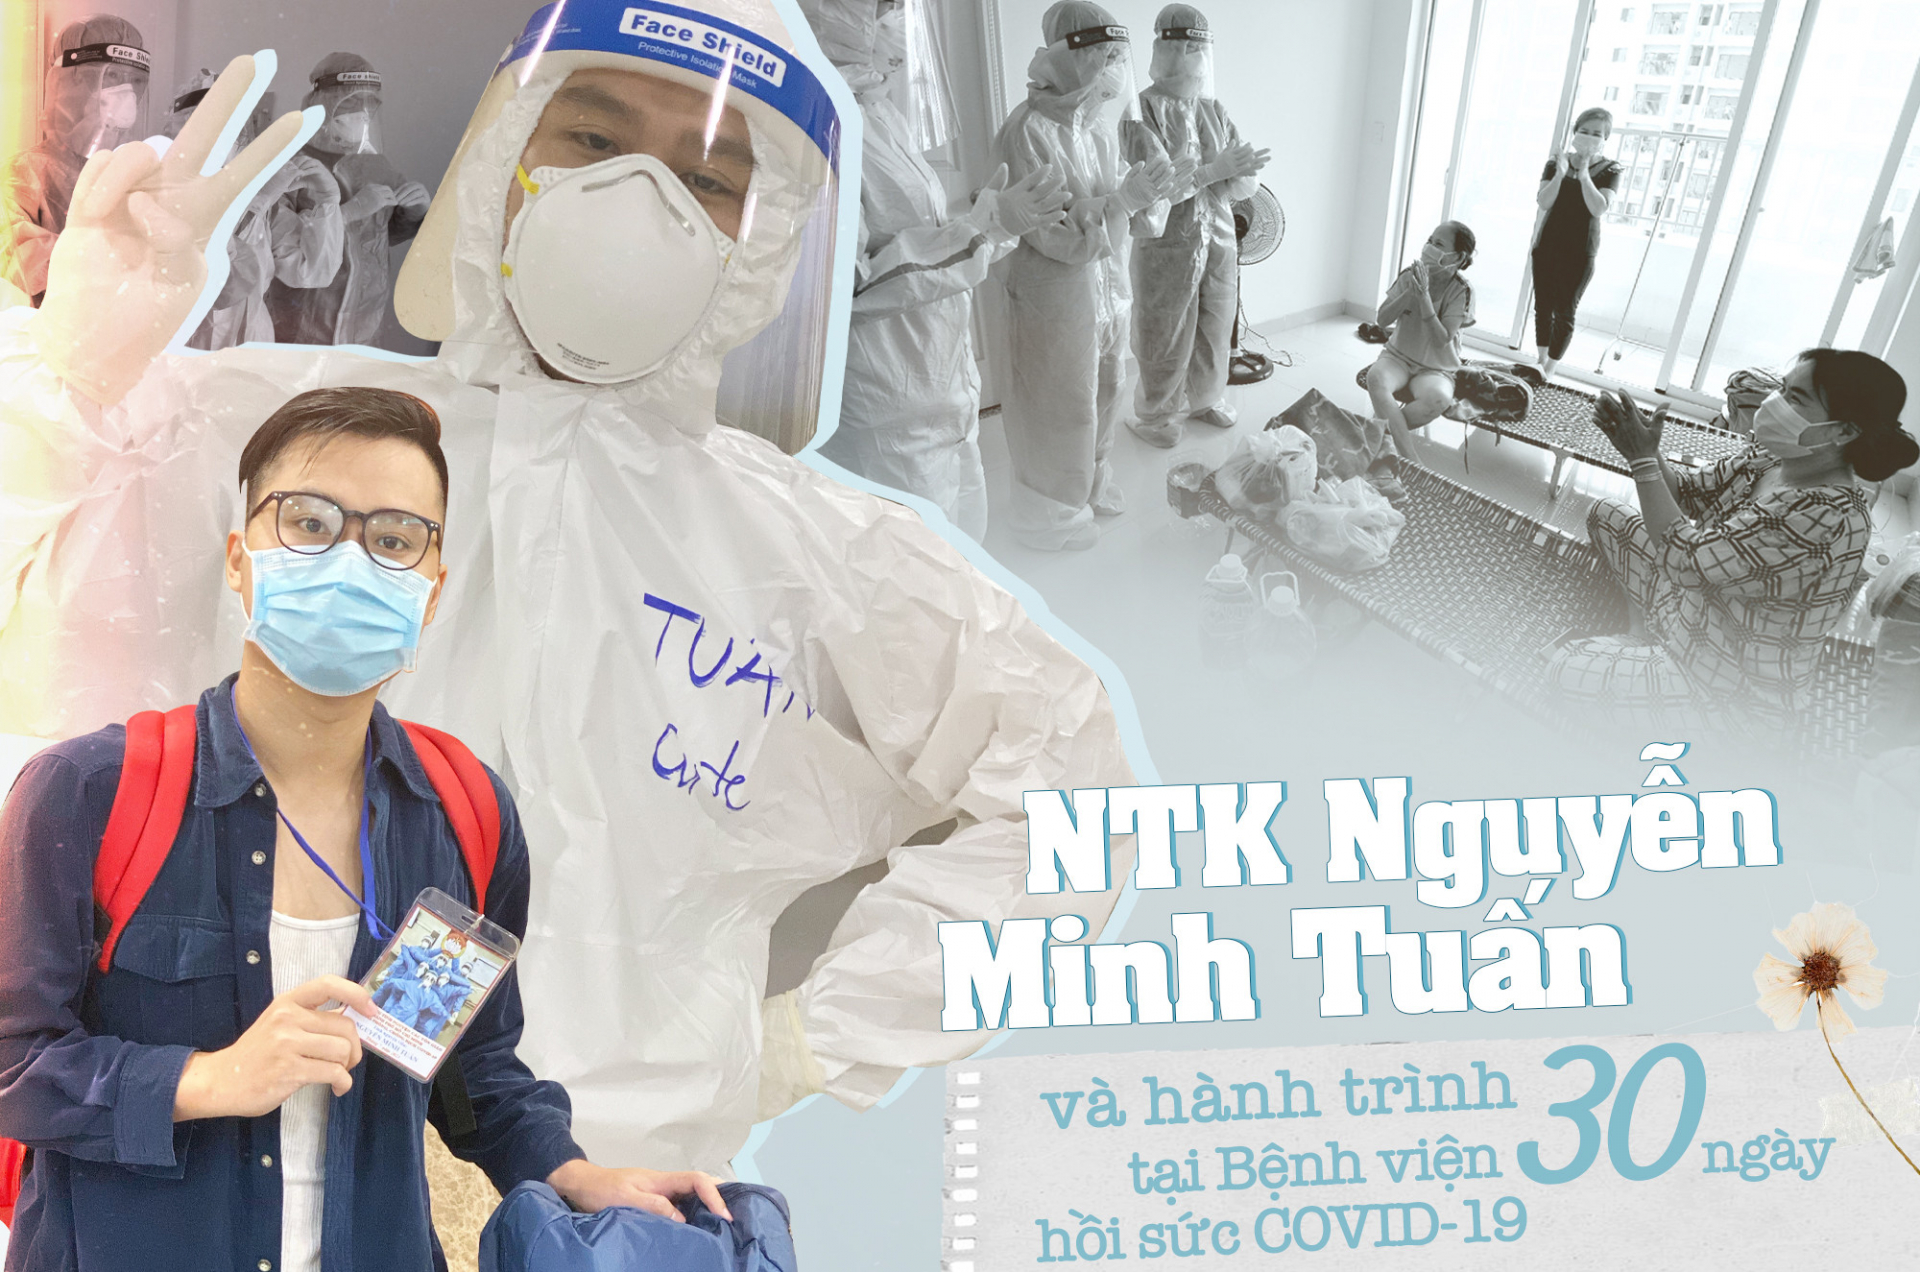 NTK Nguyễn Minh Tuấn và 30 ngày hỗ trợ tại Bệnh viện hồi sức Covid-19: 